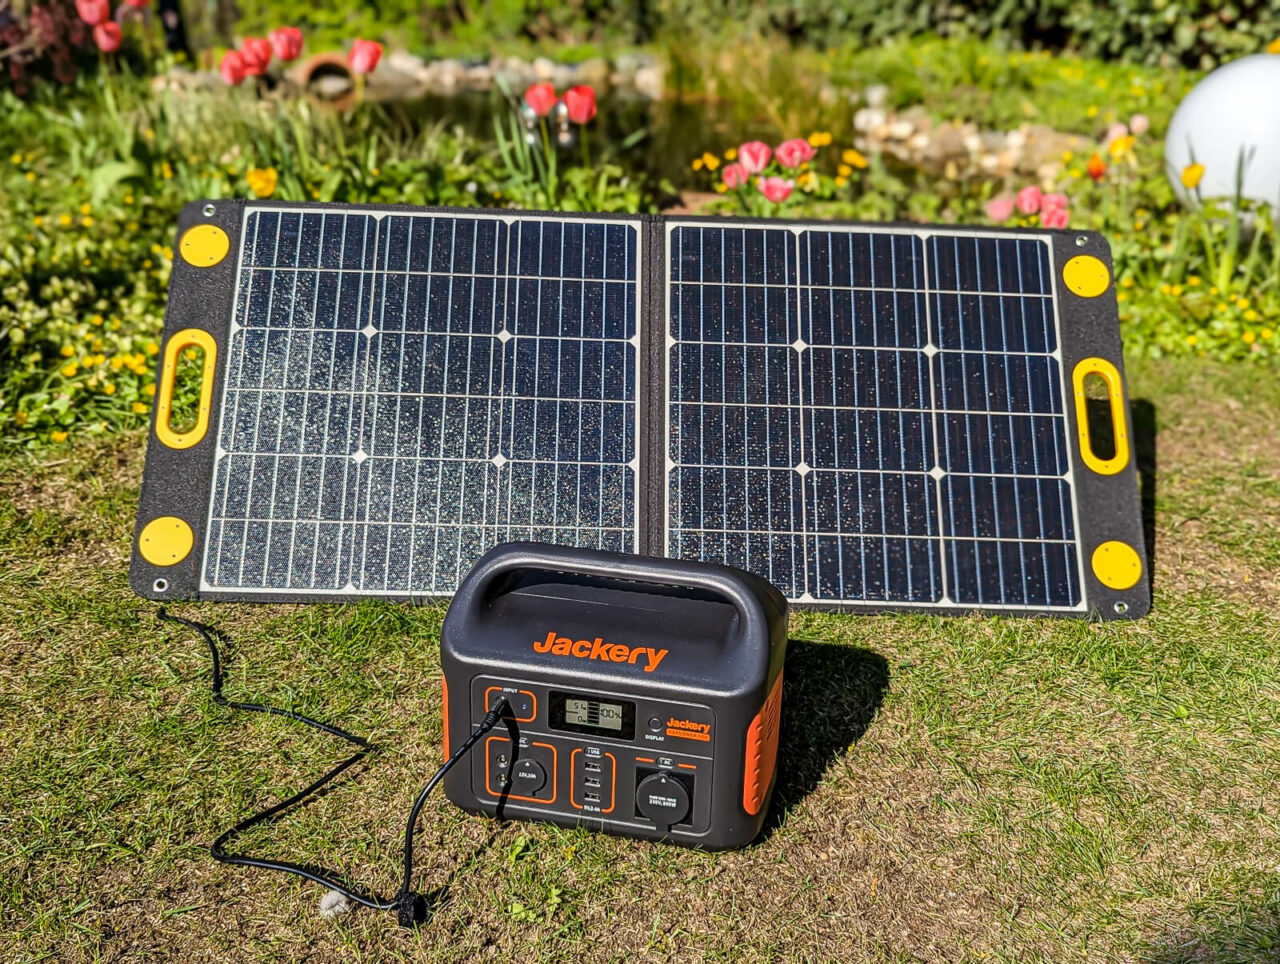 Togo Power 100w Advance Solar Panel Test, Leistung Bei Sonne, Mittag, Mit Jackery Explorer 500 Powerstation